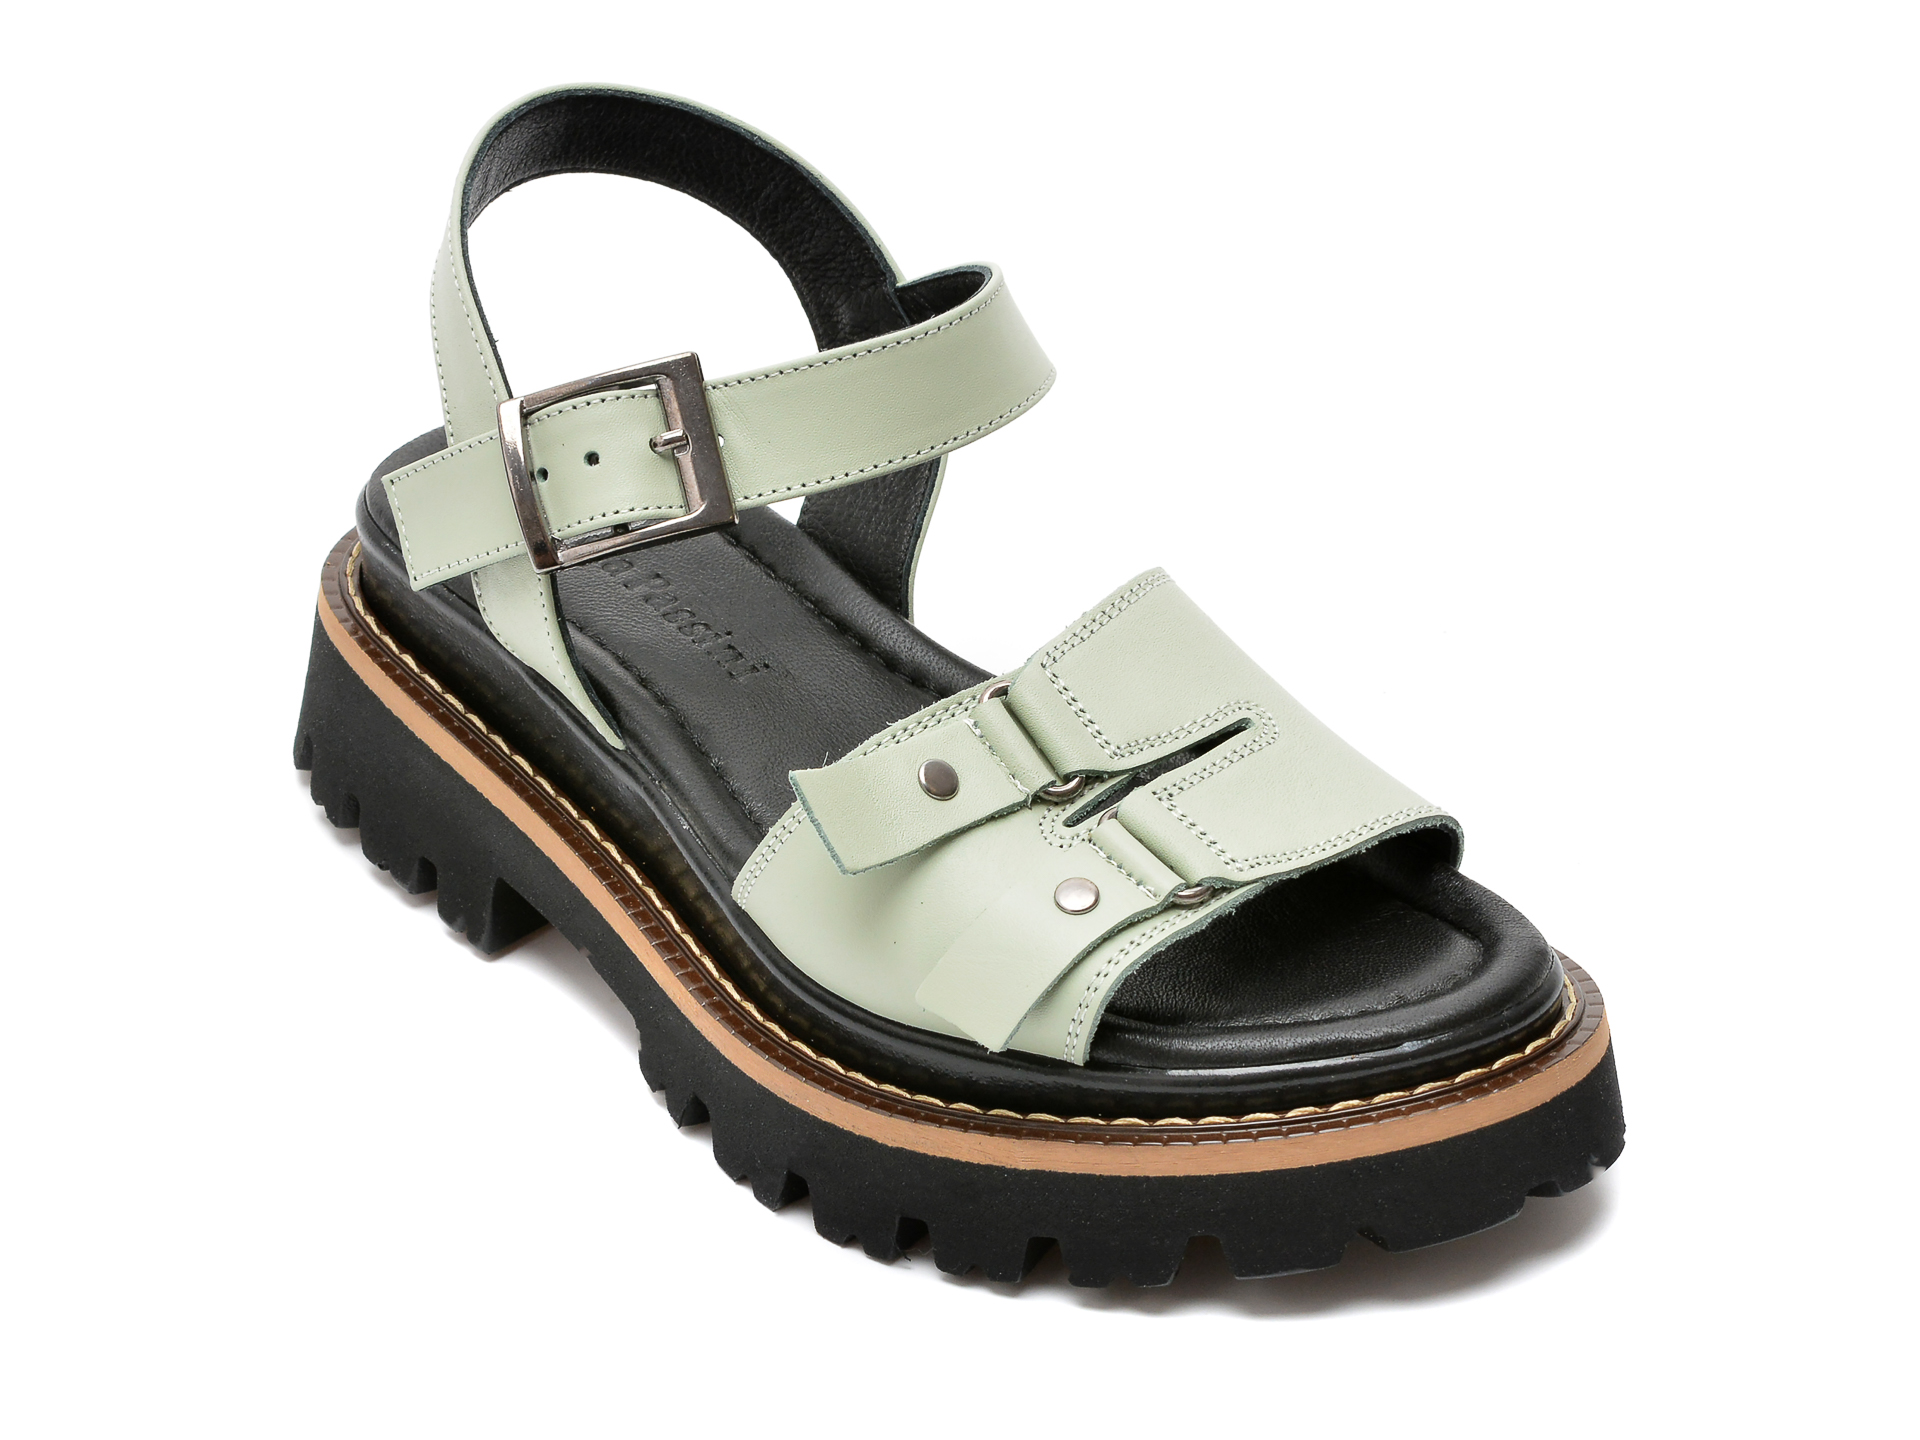 Sandale FLAVIA PASSINI verzi, 509503, din piele naturala /femei/sandale INCALTAMINTE